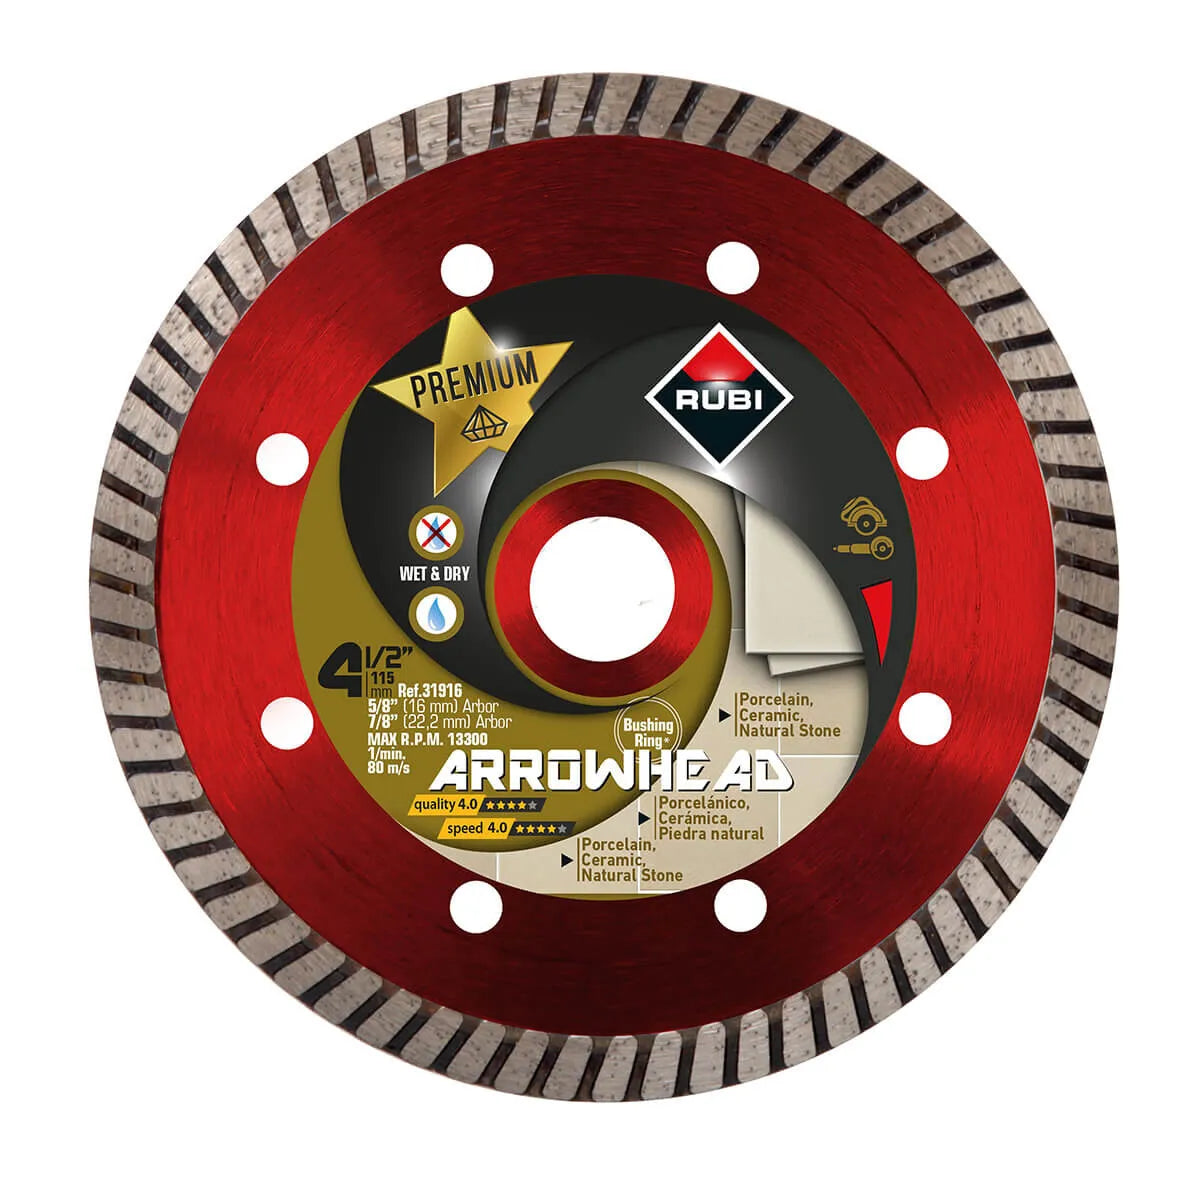 Rubi Arrowhead 4-1/2" Dry Turbo Diamond Blade